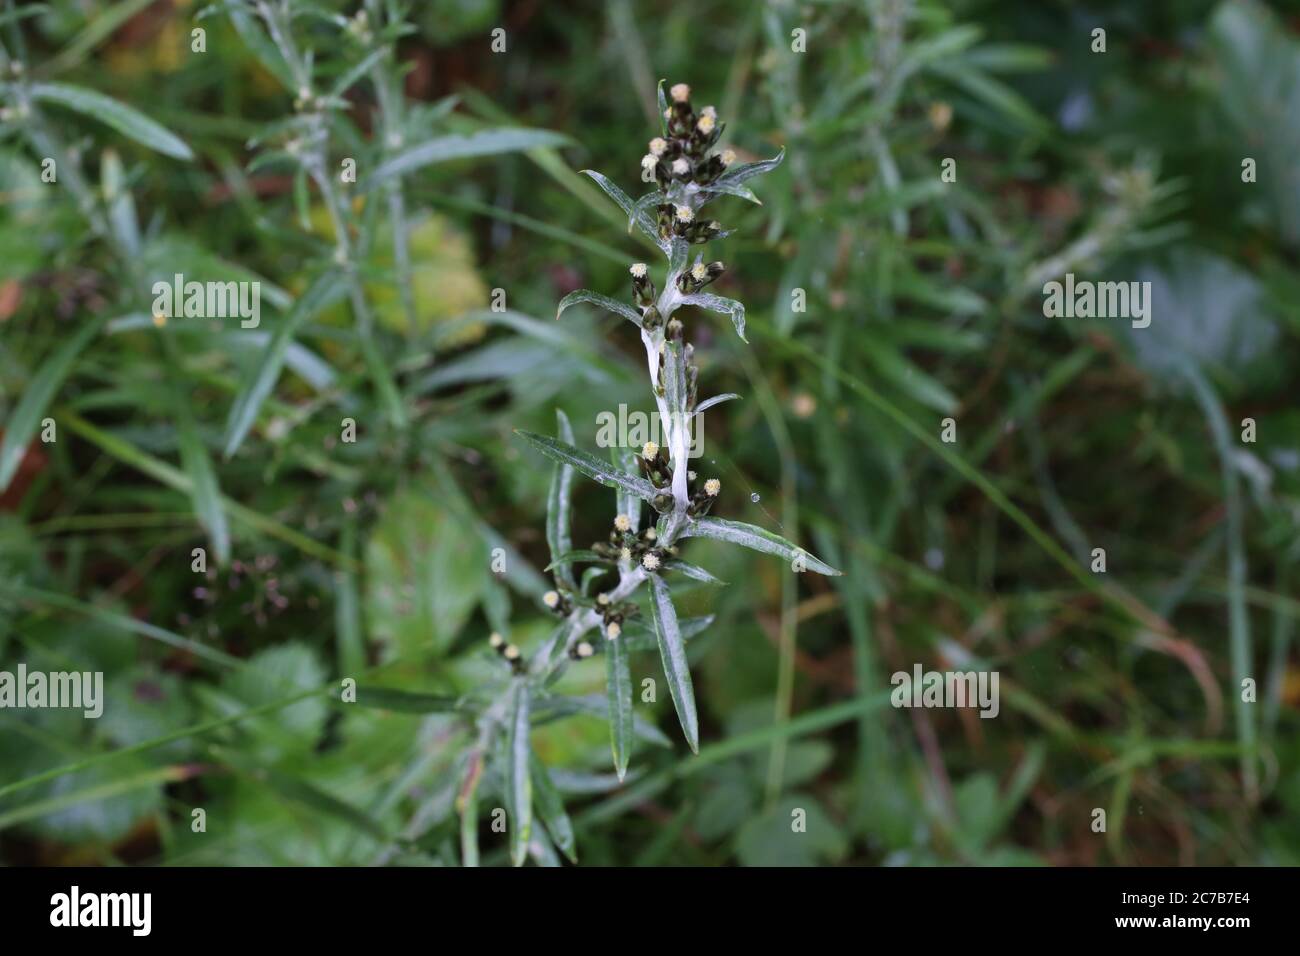 Gnaphalium sylvaticum - Wild plant shot in summer. Stock Photo